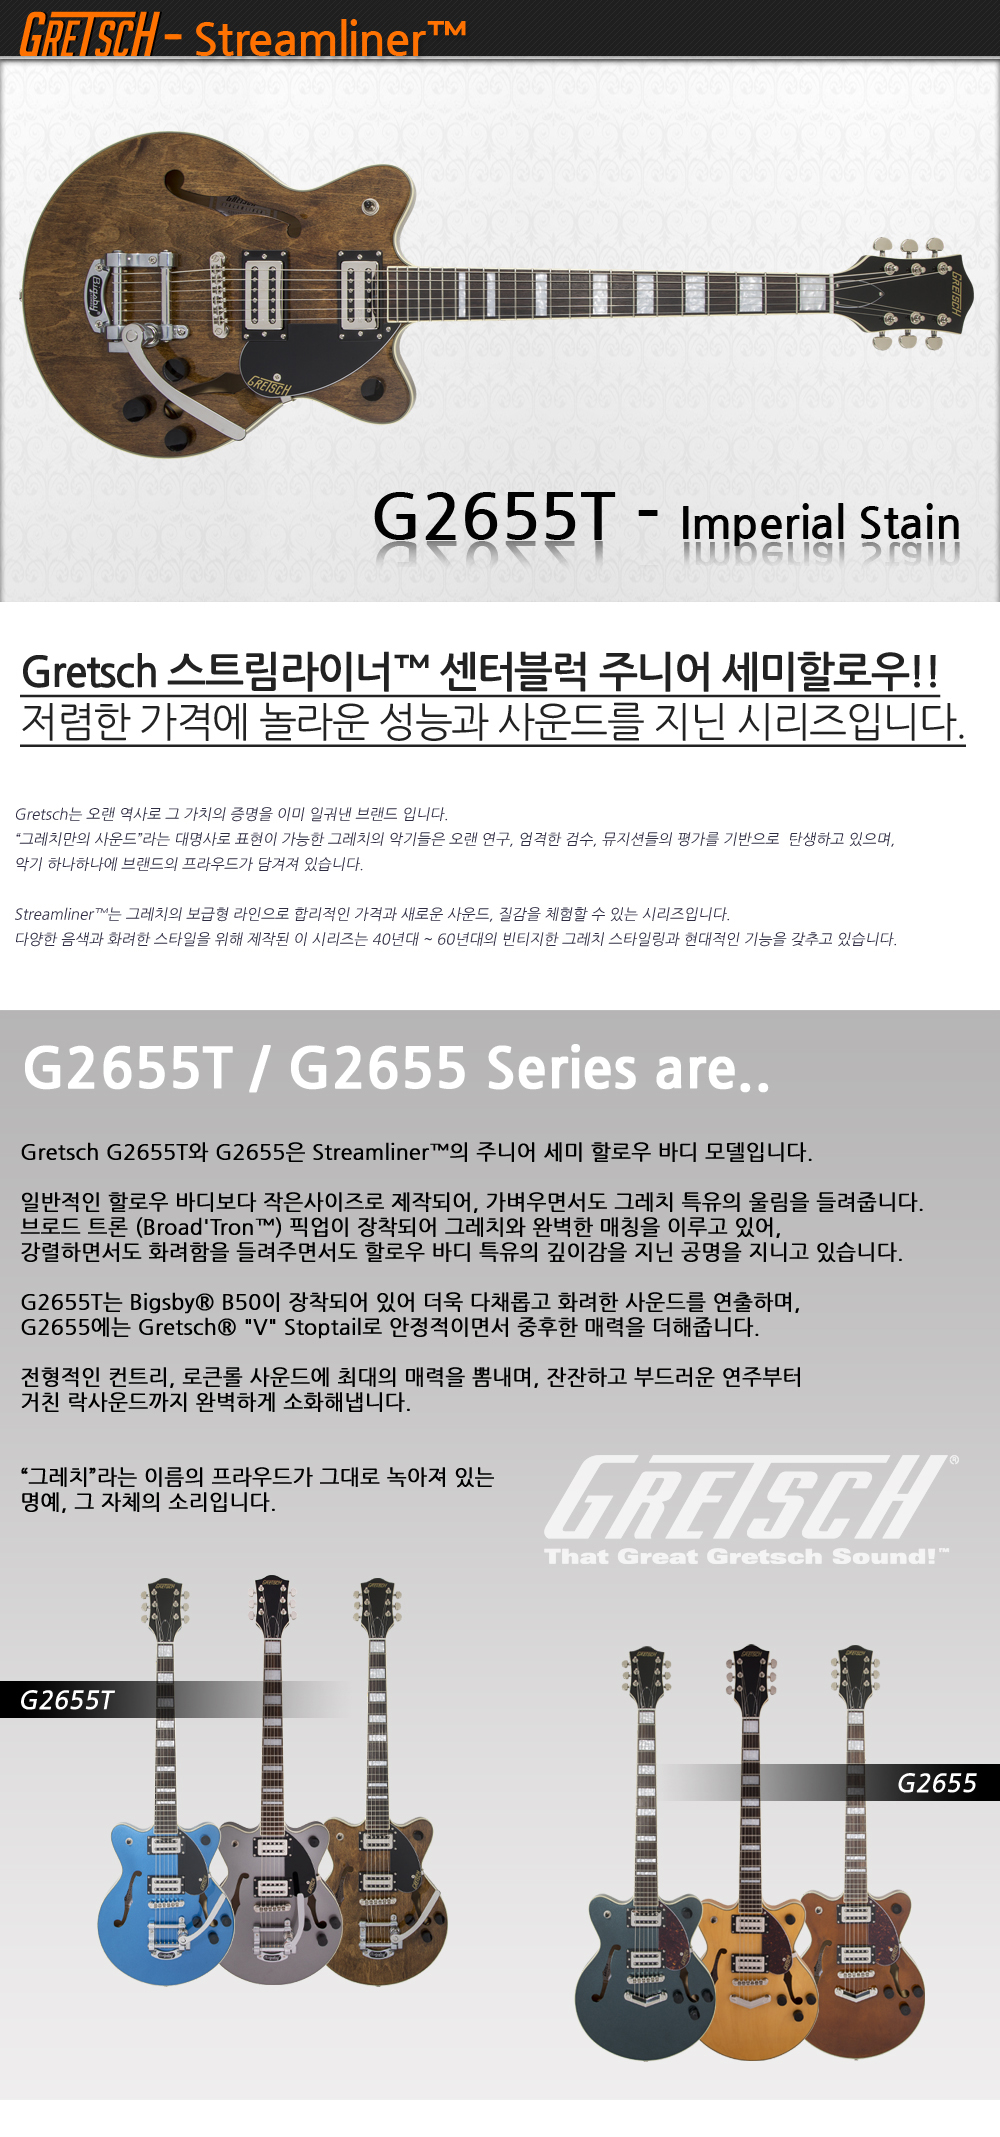 Gretsch-G2655T-ImperialStain_1_175546.jpg